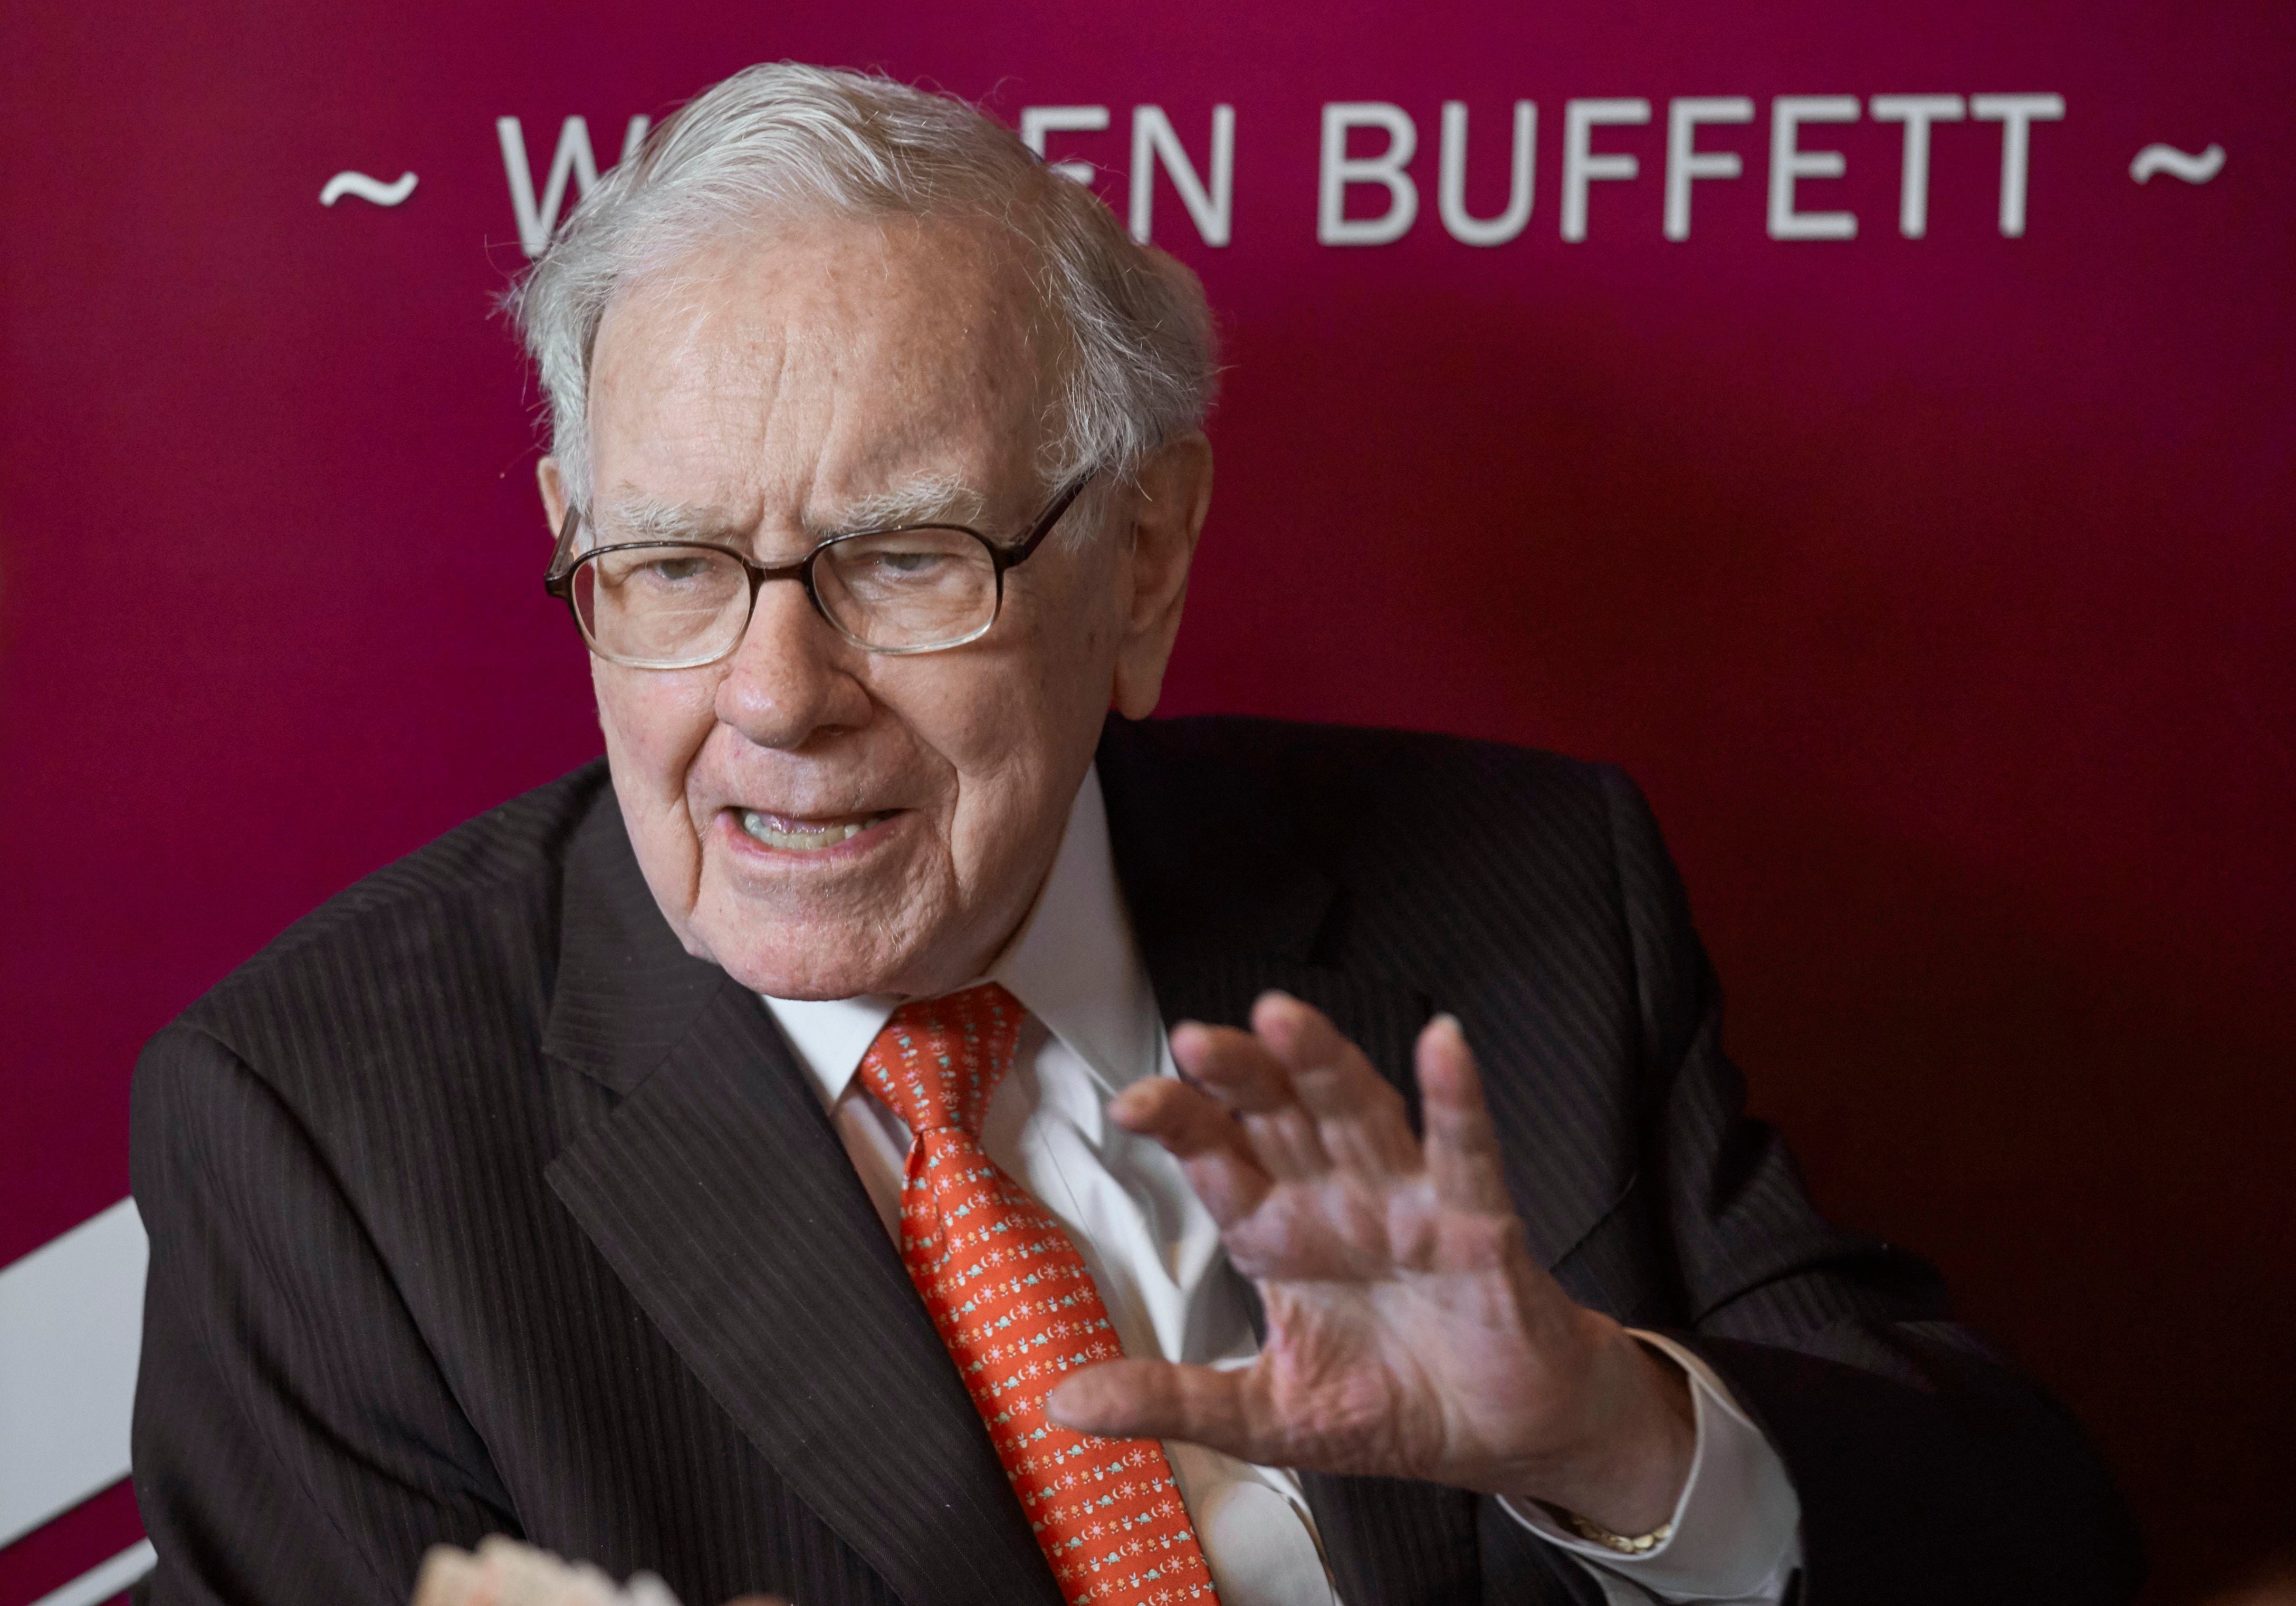 Buffett, hablando a los accionistas de Berkshire en un evento en Omaha, Nebraska
(Foto AP/Nati Harnik)